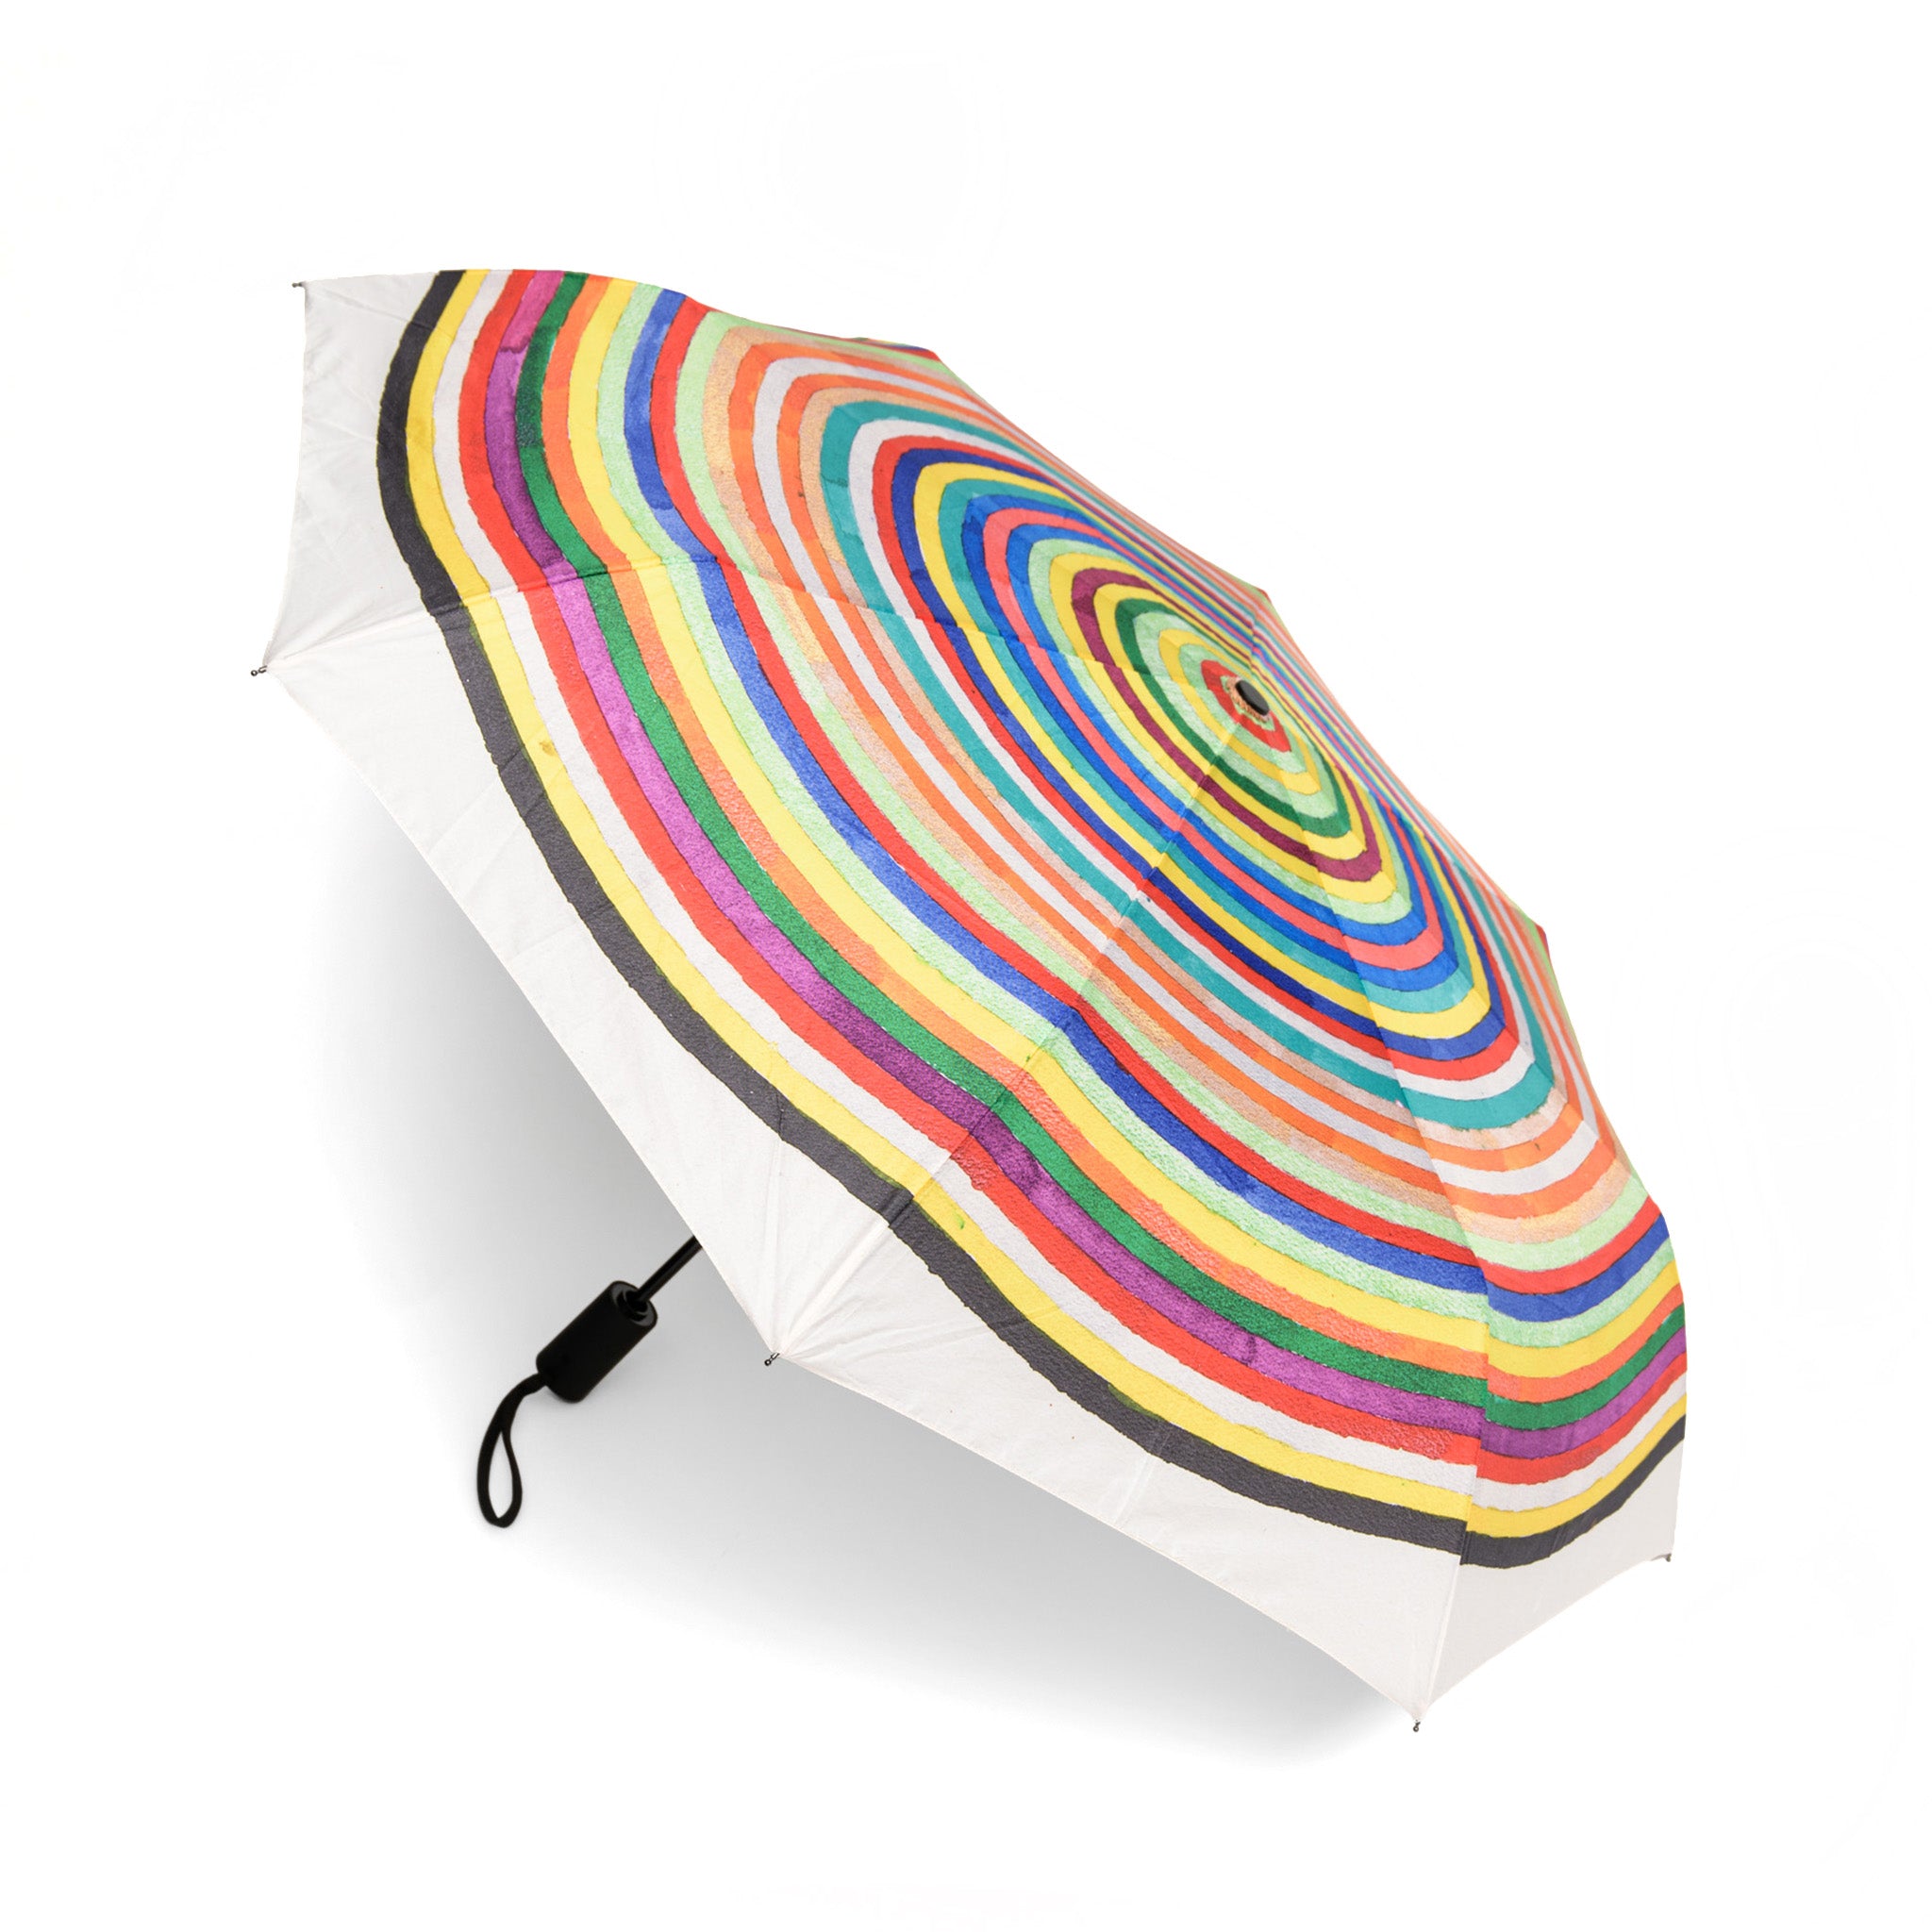 Max Gimblett The Multicolored Garment Umbrella